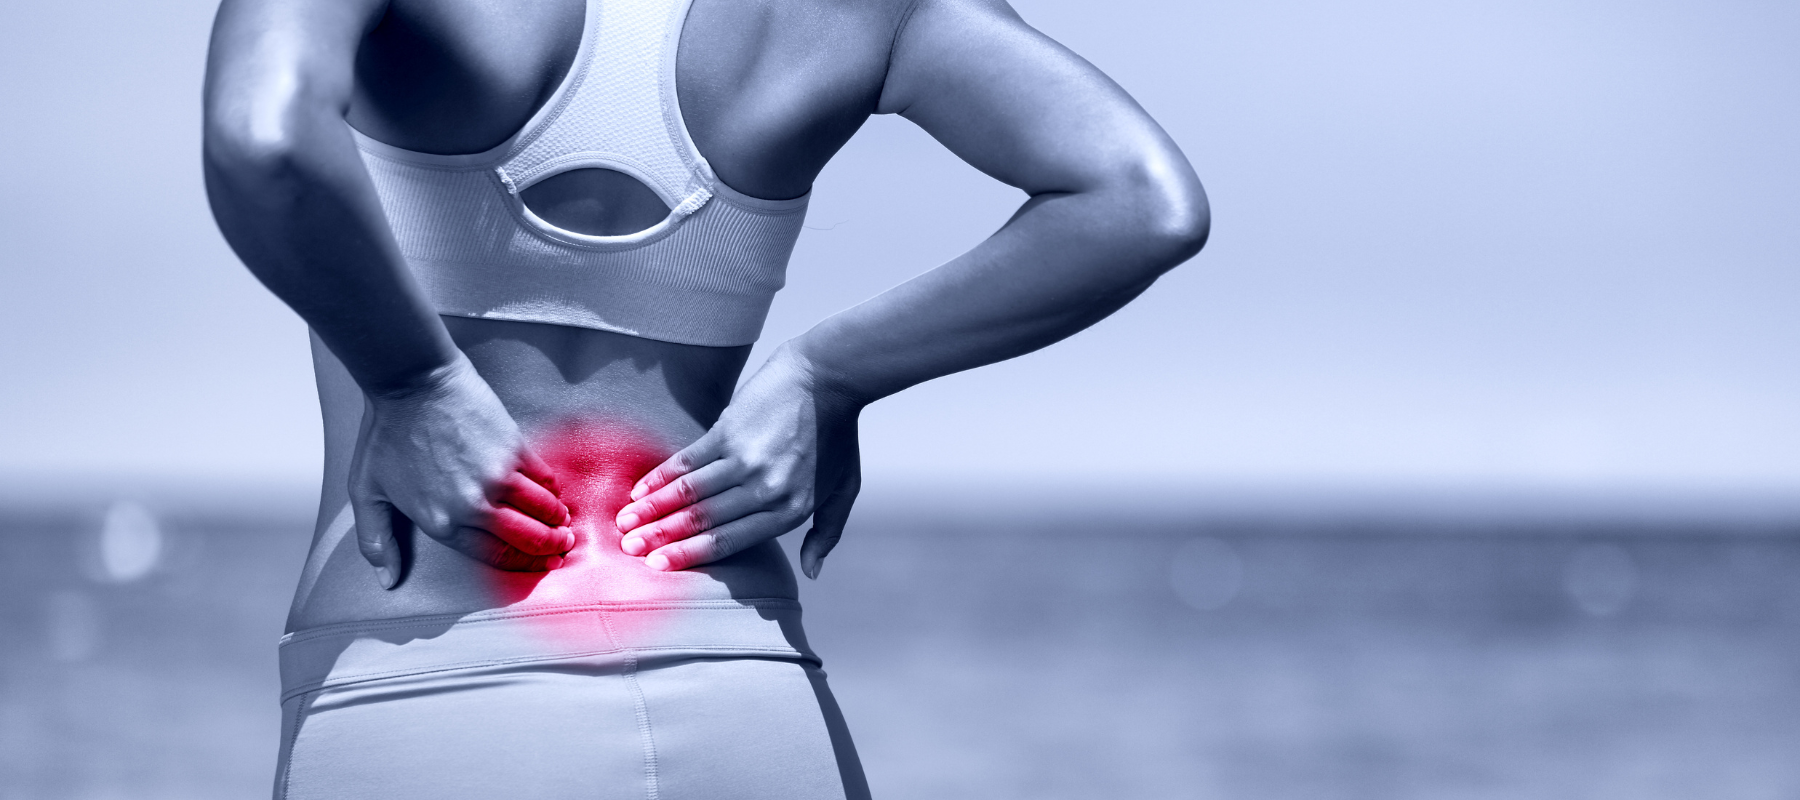 Physiotherapie Übungen Rücken: Rückenschmerzen lindern mit diesen Rückenübungen